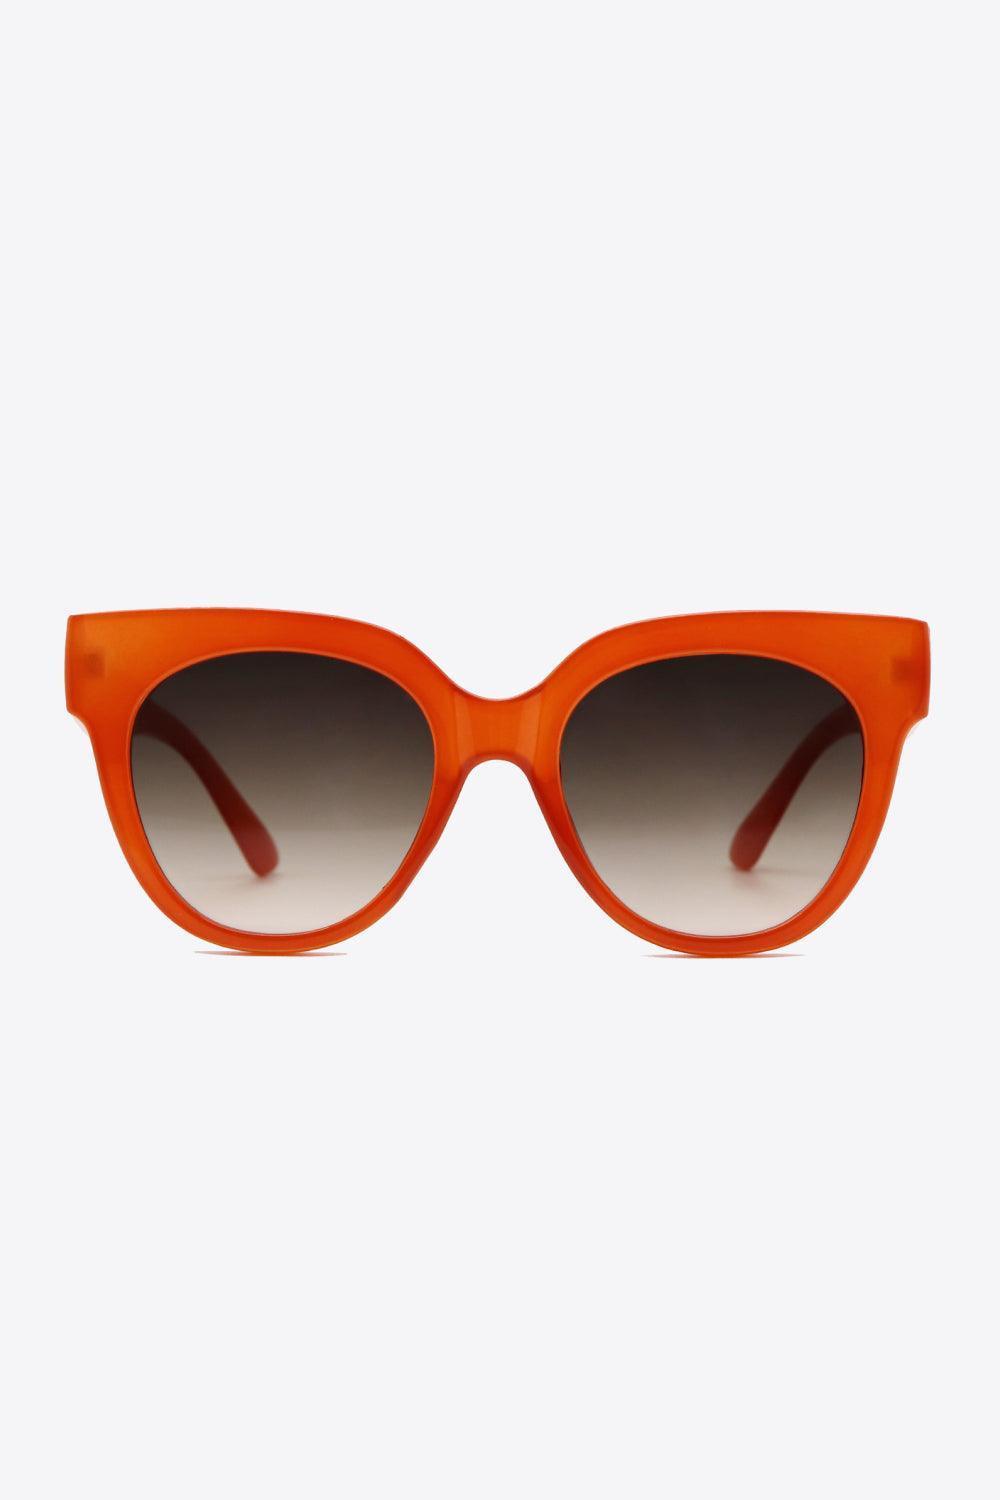 Deep Red Frame Round Polycarbonate Sunglasses - MXSTUDIO.COM